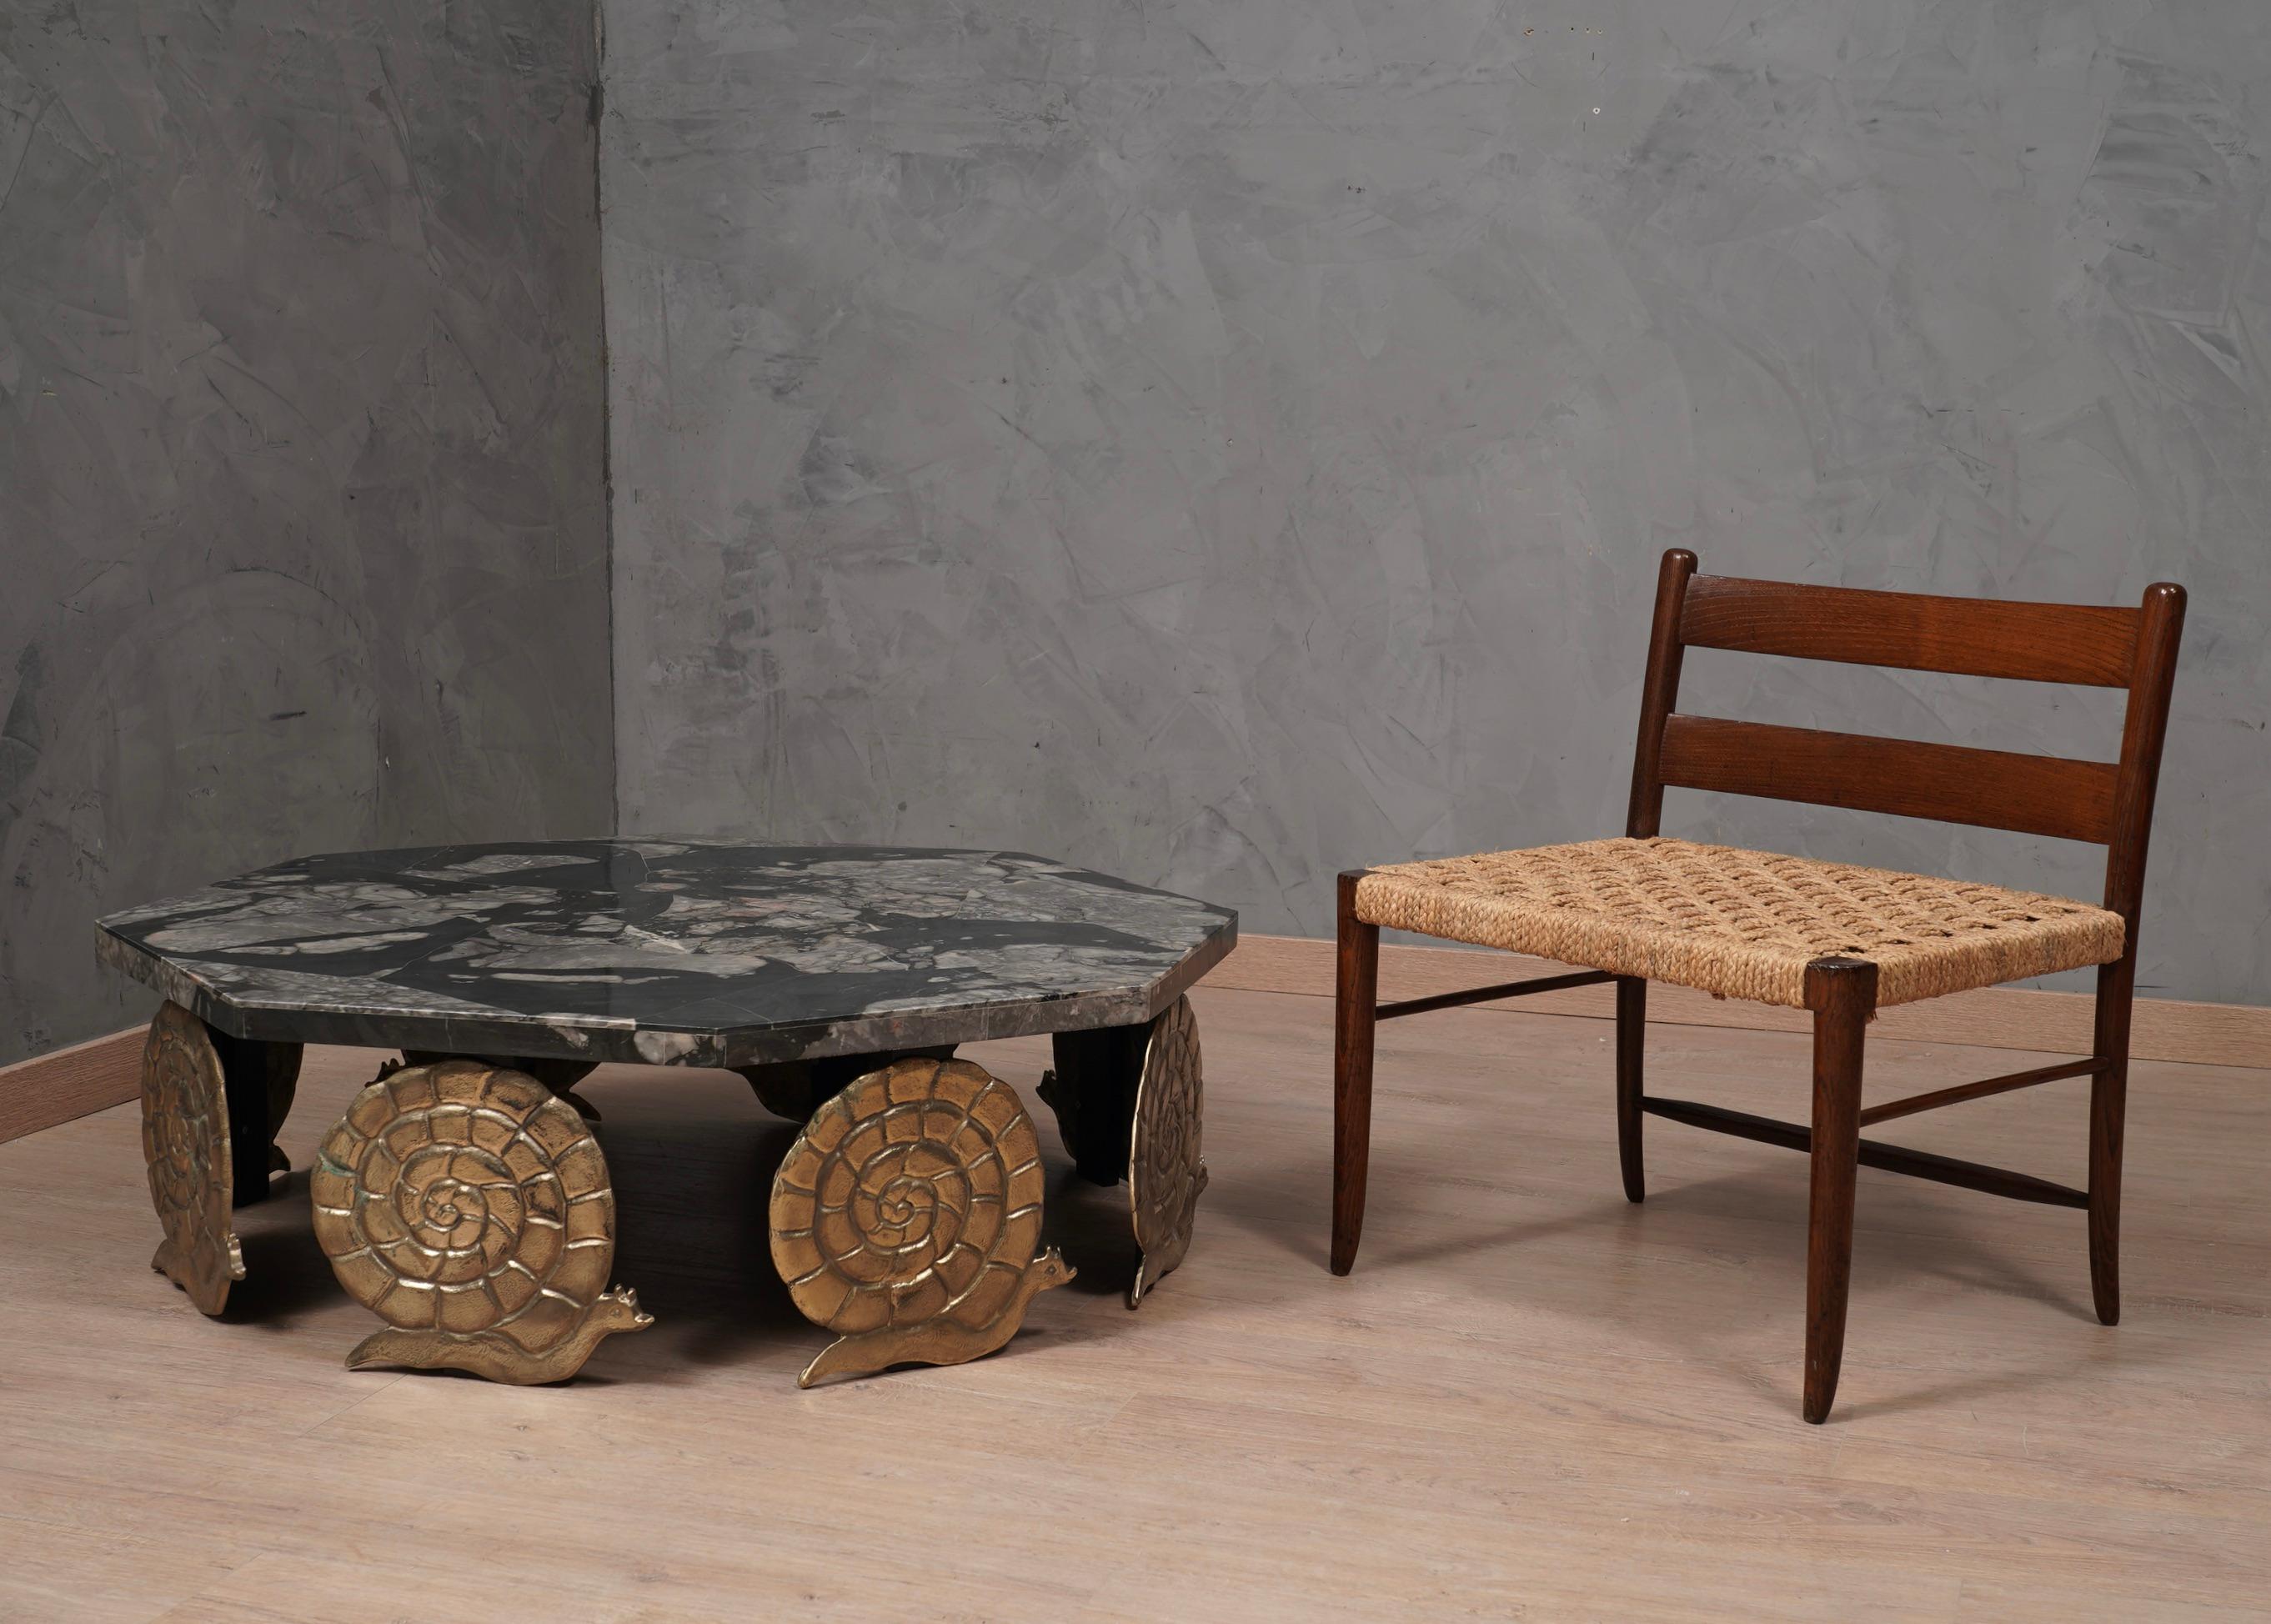 Belle paire de chaises parfaitement laquées, assise en paille caractéristique conservée en parfait état. Les chaises au design très carré présentent un contraste exclusif entre le polissage de la partie en bois et le rustique de la partie assise en